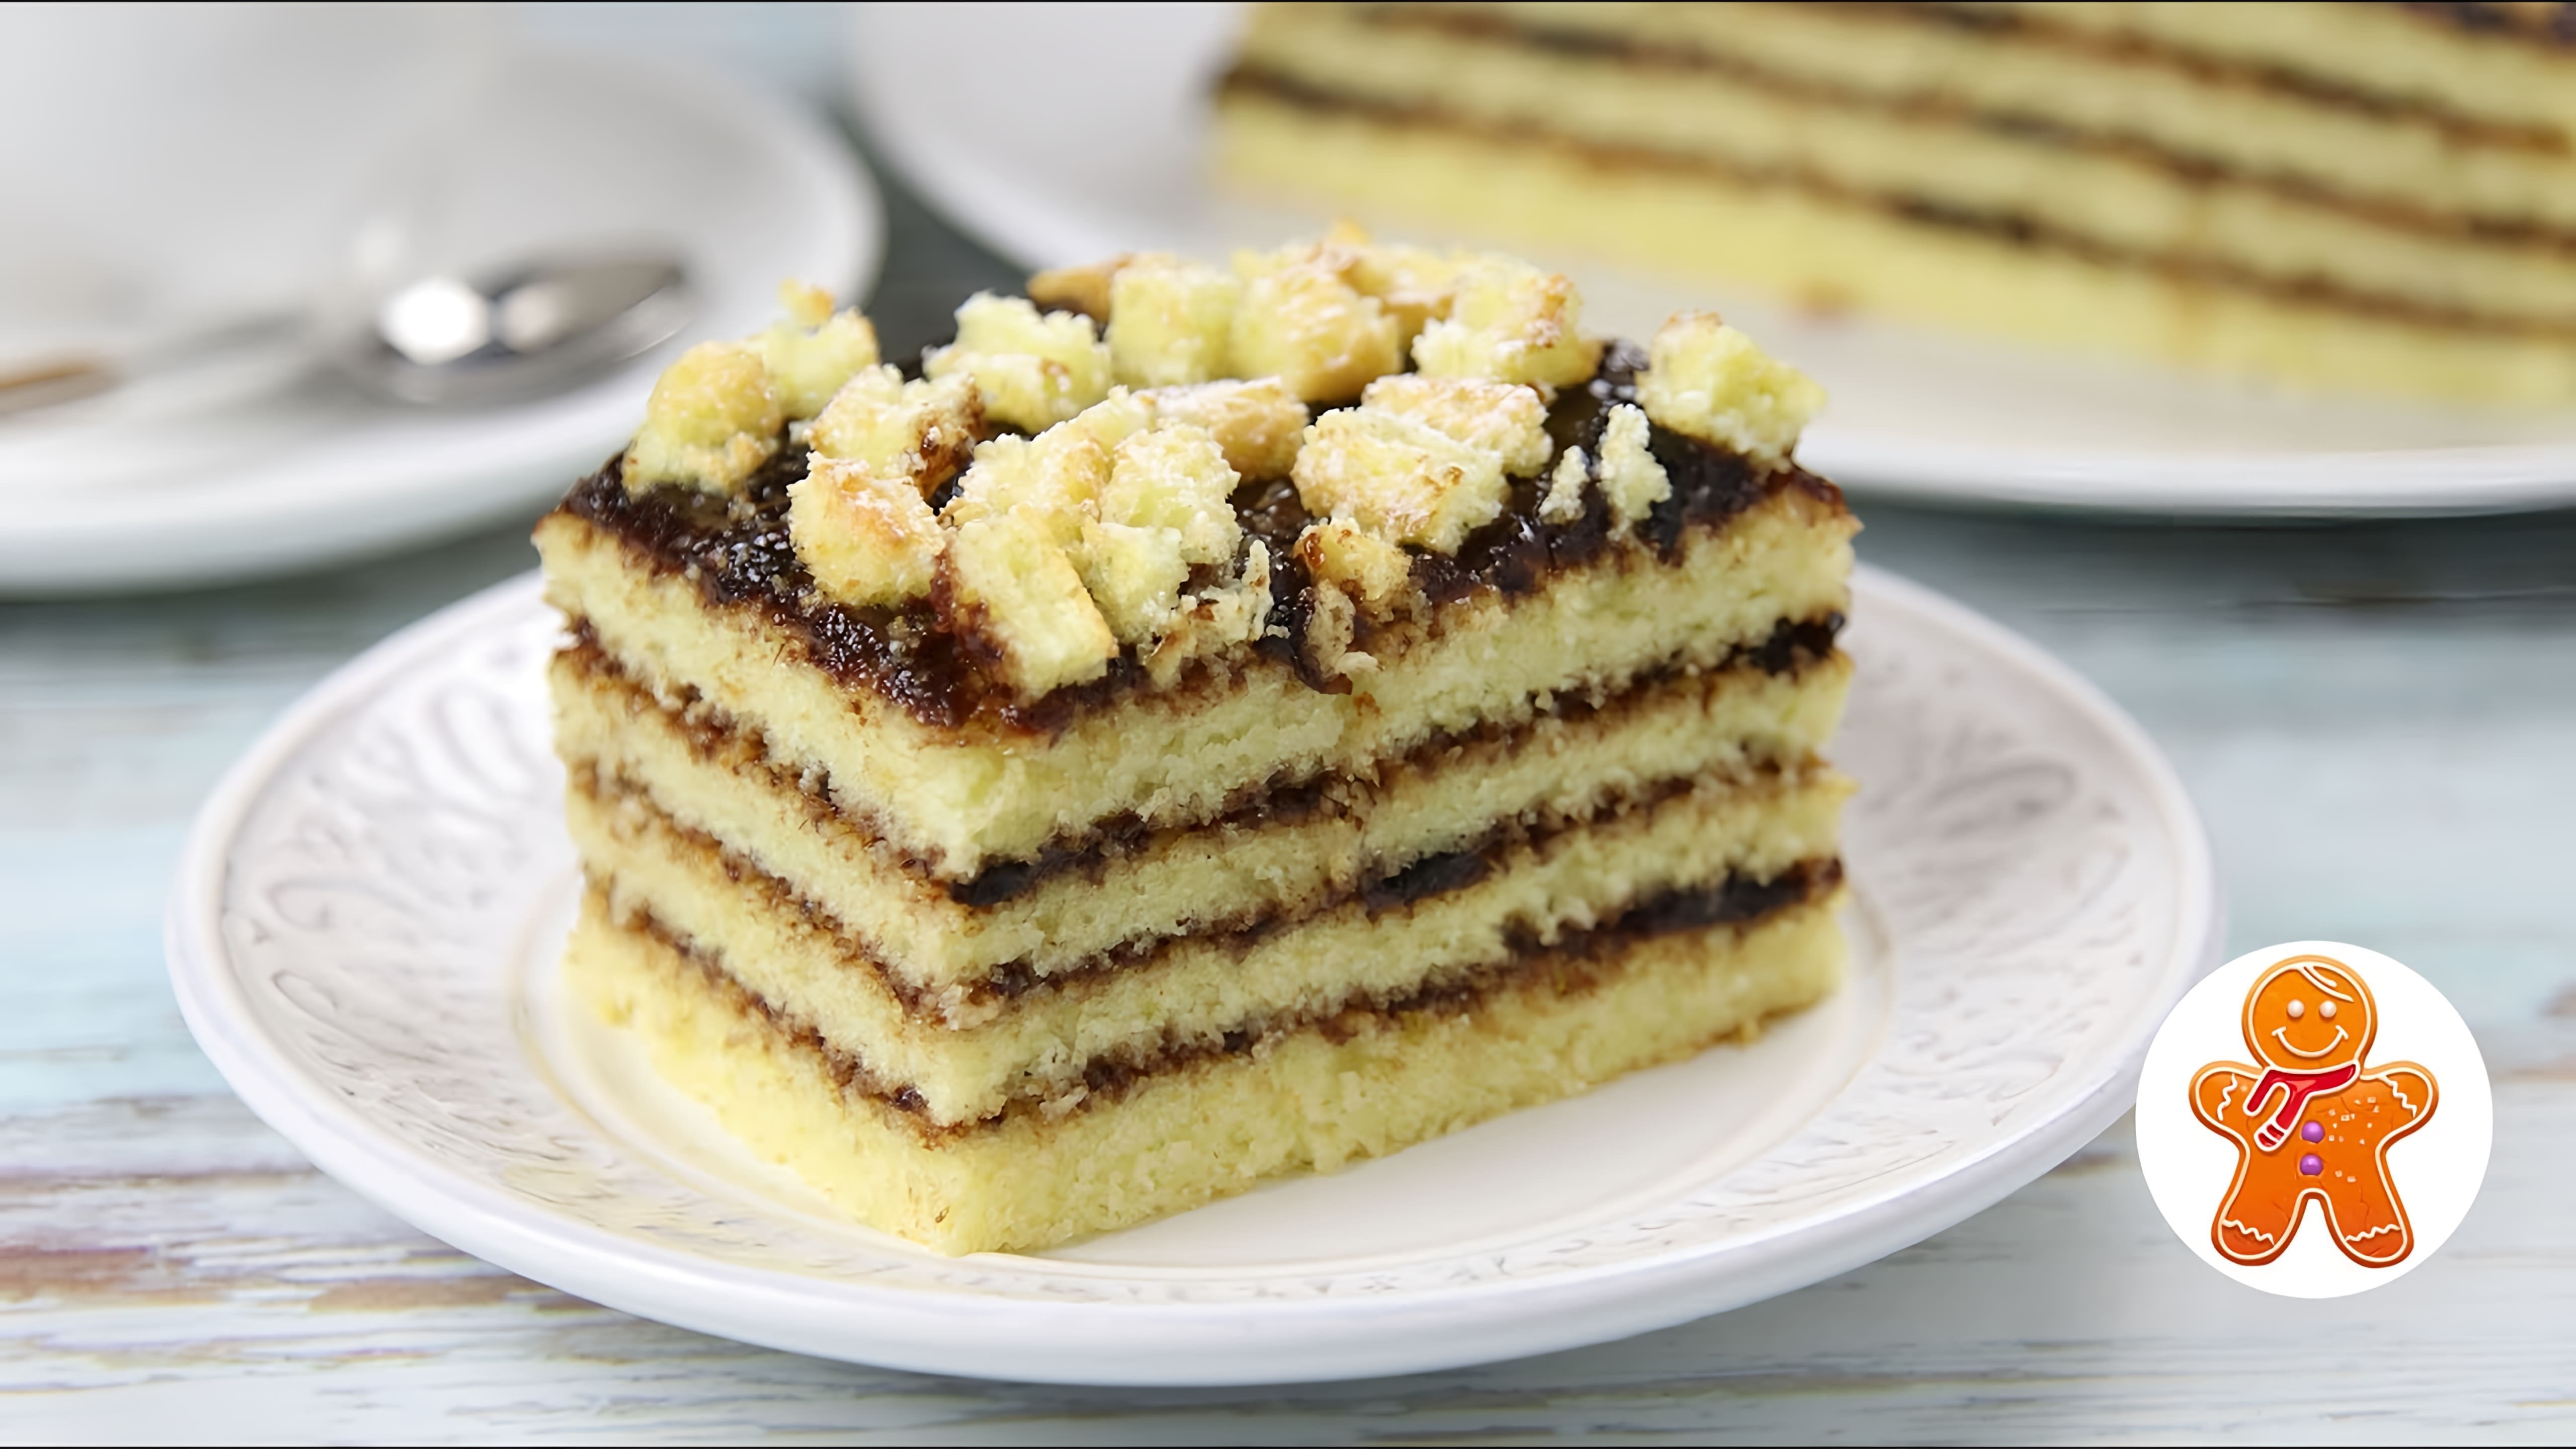 В этом видео демонстрируется рецепт быстрого и простого пирога, который можно приготовить из школьной тетради